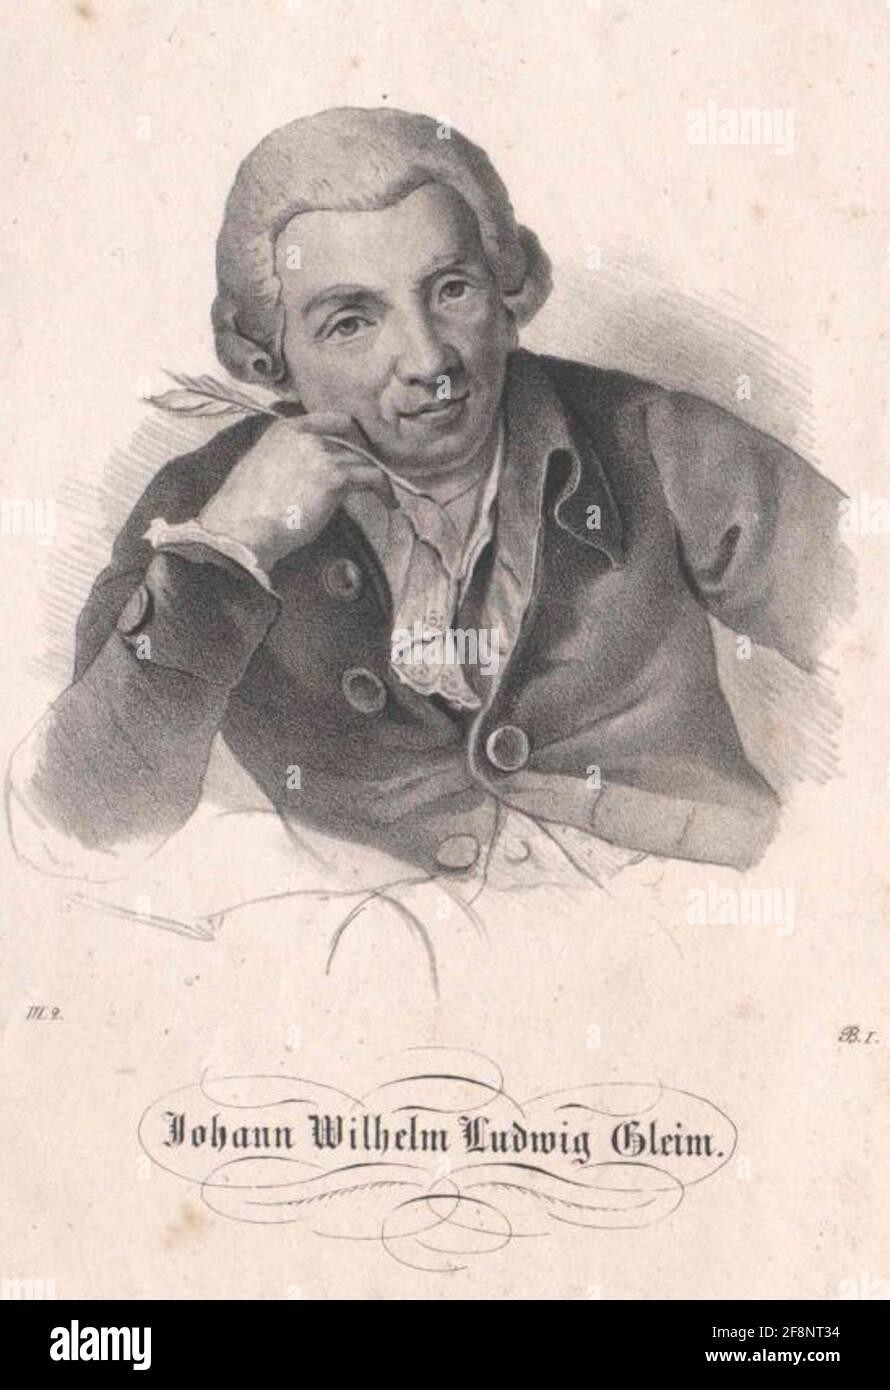 Gleim, Johann Wilhelm Ludwig. Stock Photo